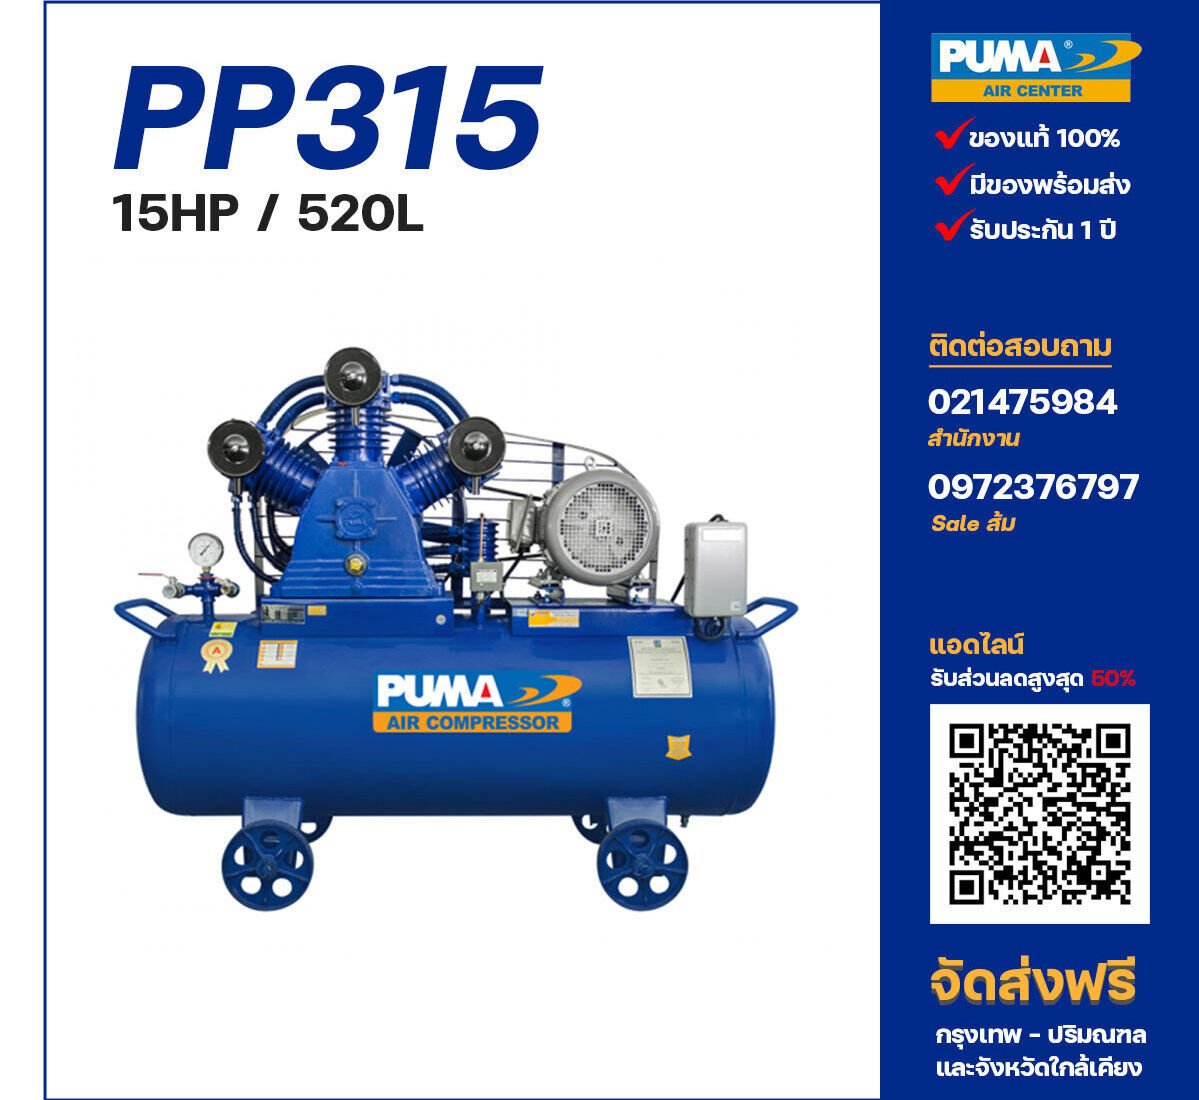 ปั๊มลมพูม่า PUMA PP315-PPM380V ปั๊มลมลูกสูบ ขนาด 3 สูบ 15 แรงม้า 520 ลิตร PUMA พร้อมมอเตอร์ PUMA ไฟ 380V ส่งฟรี กรุงเทพฯ-ปริมณฑล รับประกัน 1 ปี